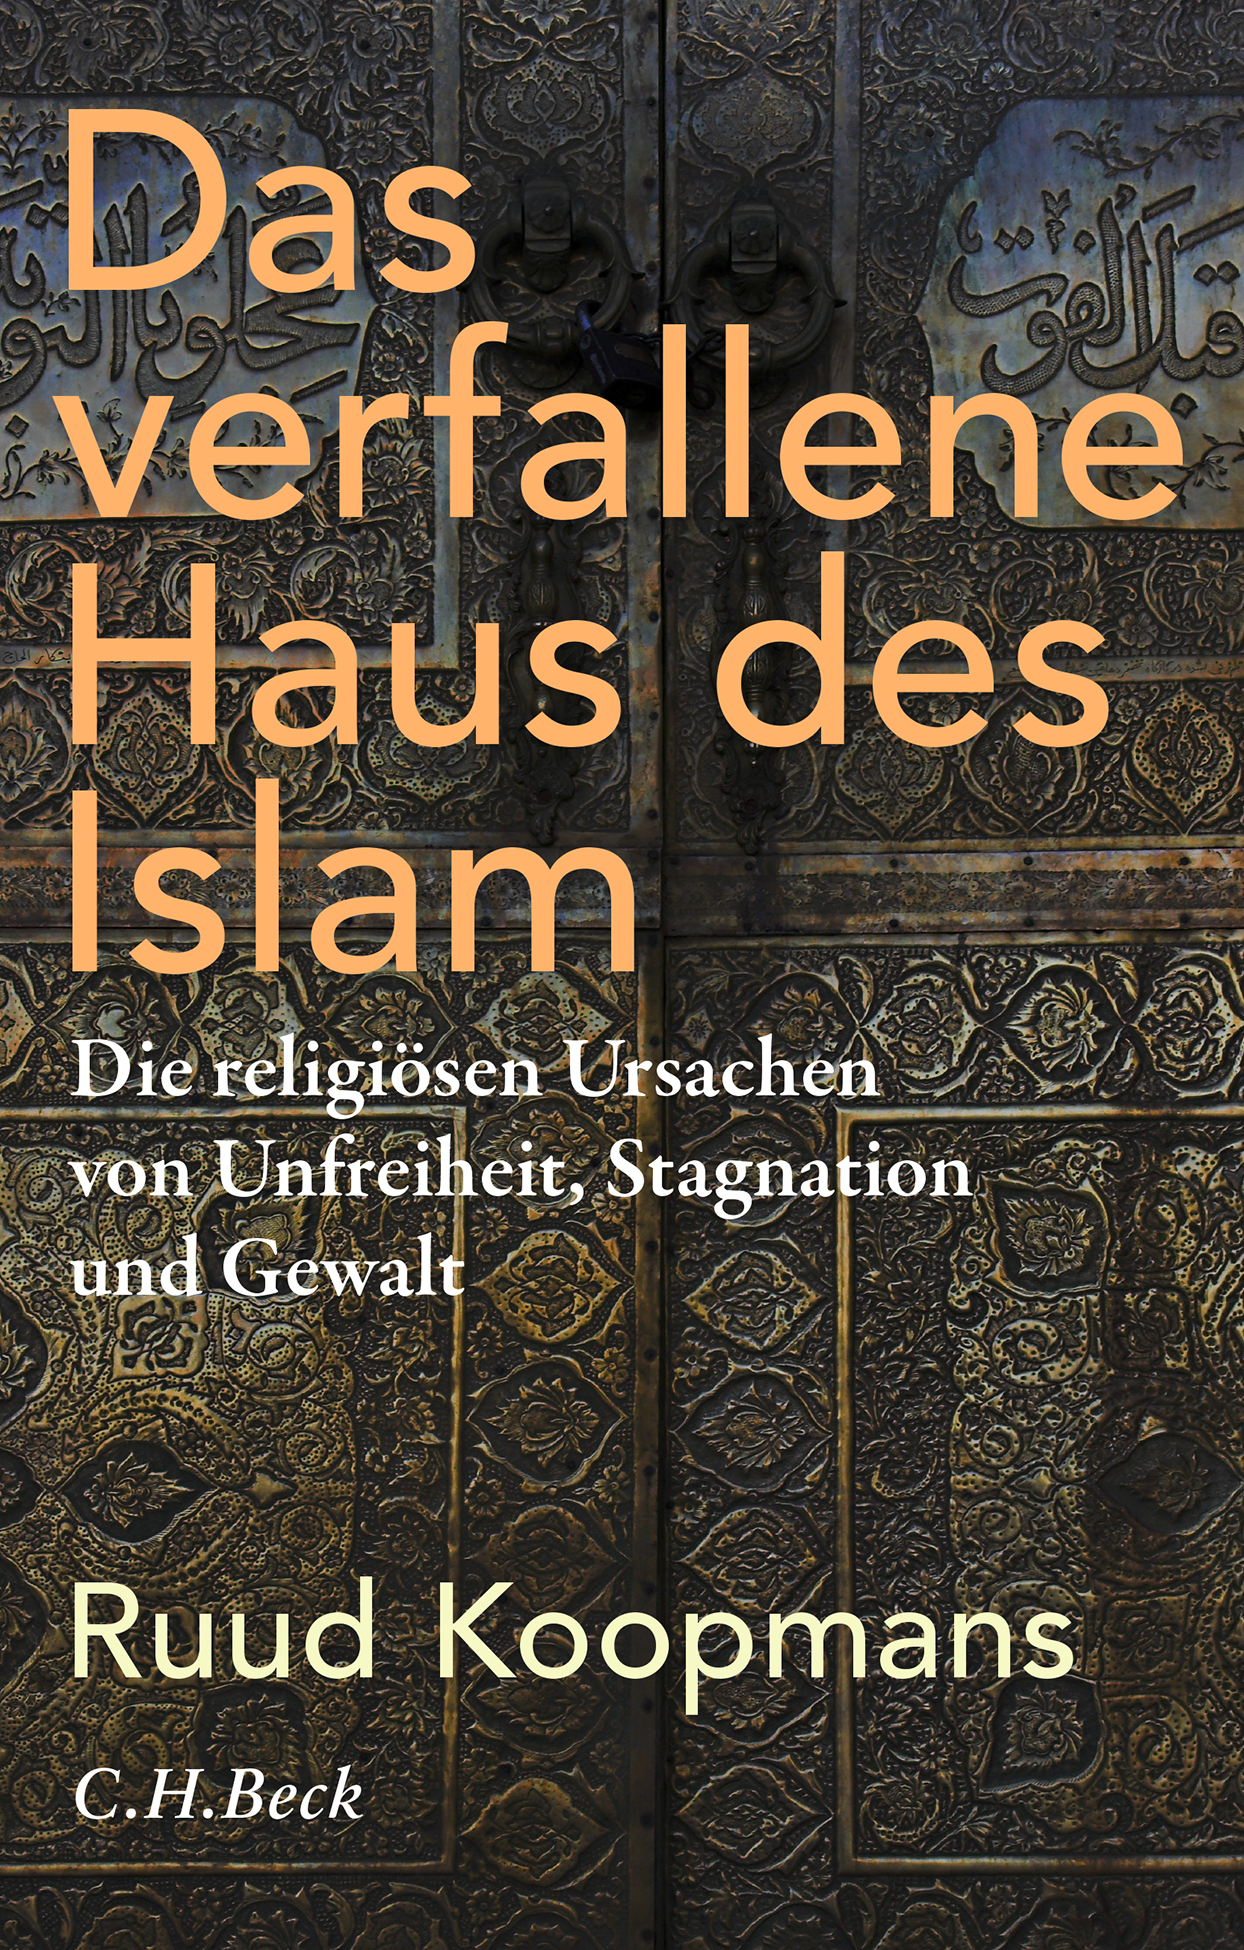 Buchcover von Ruud Koopmans: Das verfallene Haus des Islam. Die religiösen Ursachen von Unfreiheit, Stagnation und Gewalt, C.H. Beck 2020